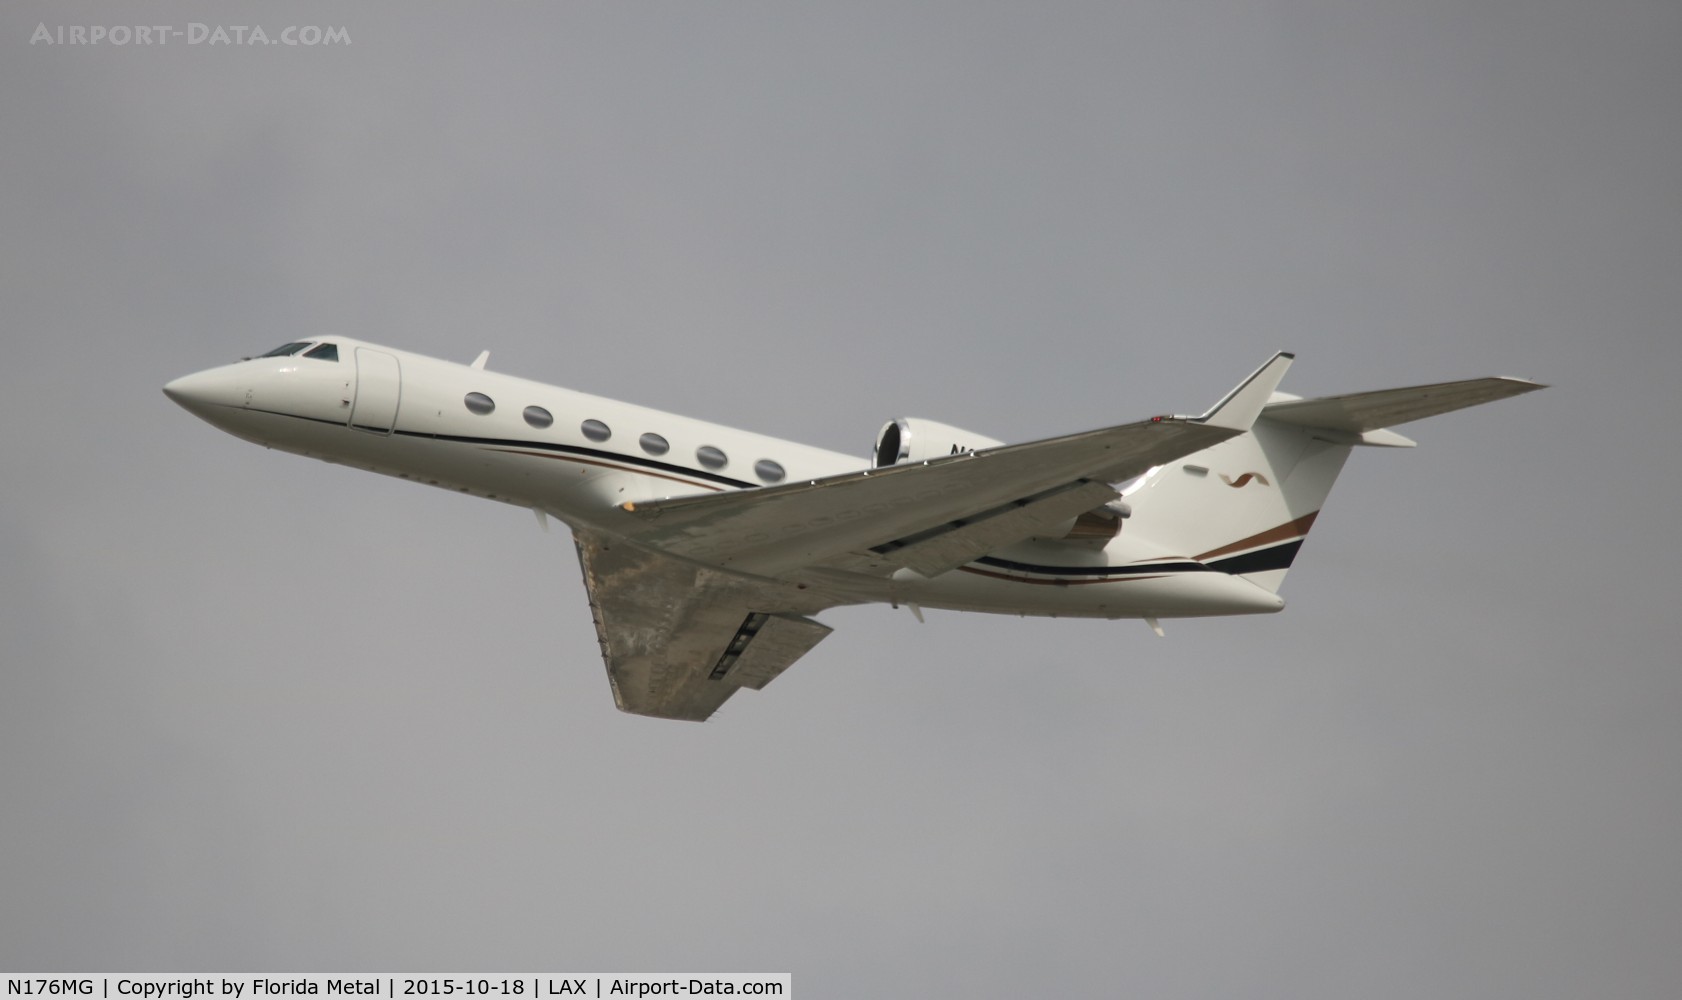 N176MG, 2002 Gulfstream Aerospace G-IV (G400) C/N 1501, Gulfstream IV